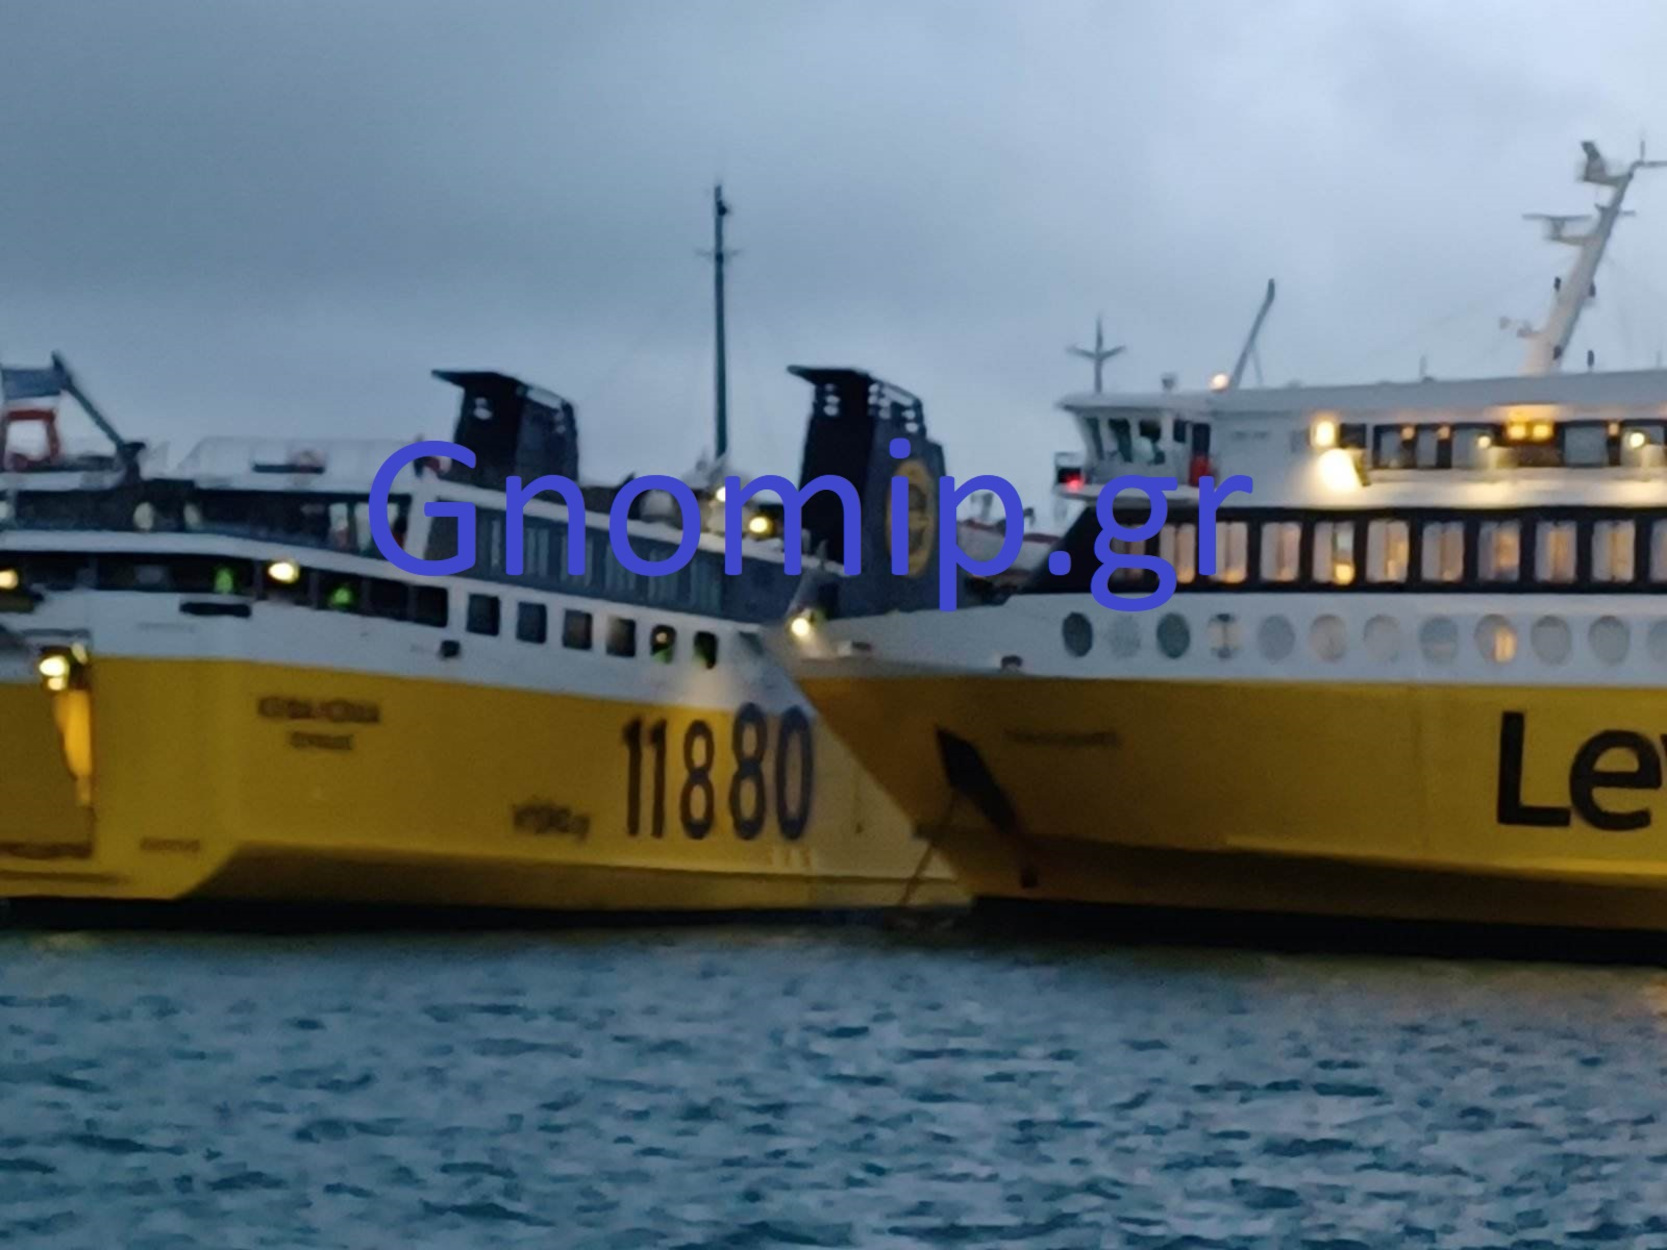 Κυλλήνη: Μικρό ατύχημα με πλοία στο λιμάνι – Μόνο υλικές οι ζημιές, ταλαιπωρία για τους επιβάτες